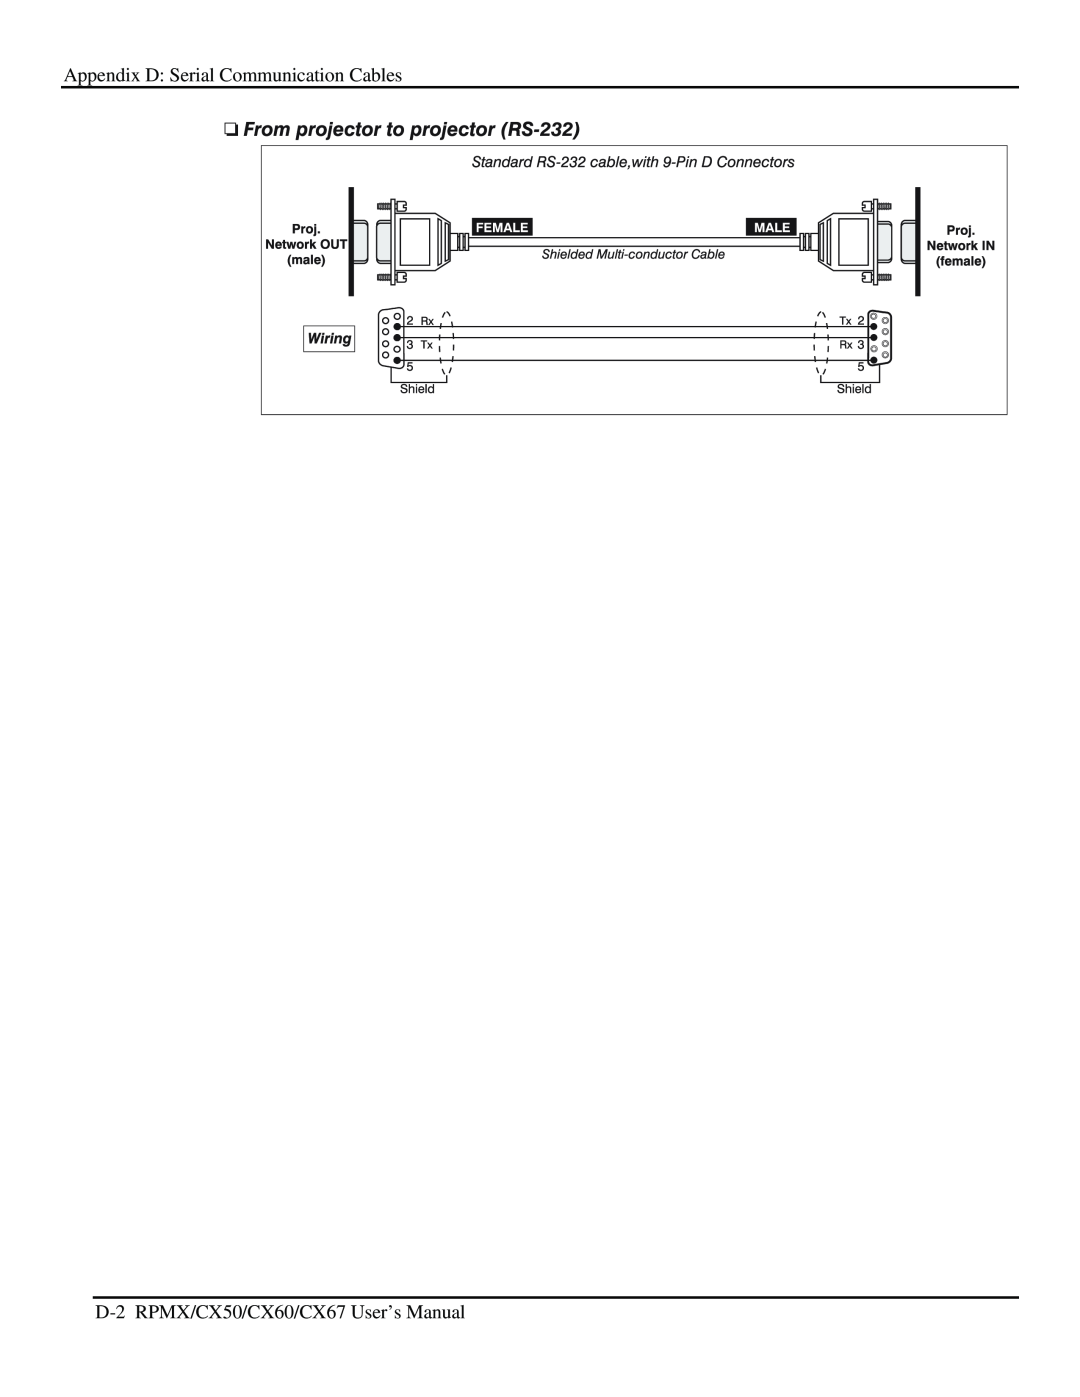 Christie Digital Systems user manual Appendix D Serial Communication Cables, D-2 RPMX/CX50/CX60/CX67 User’s Manual 